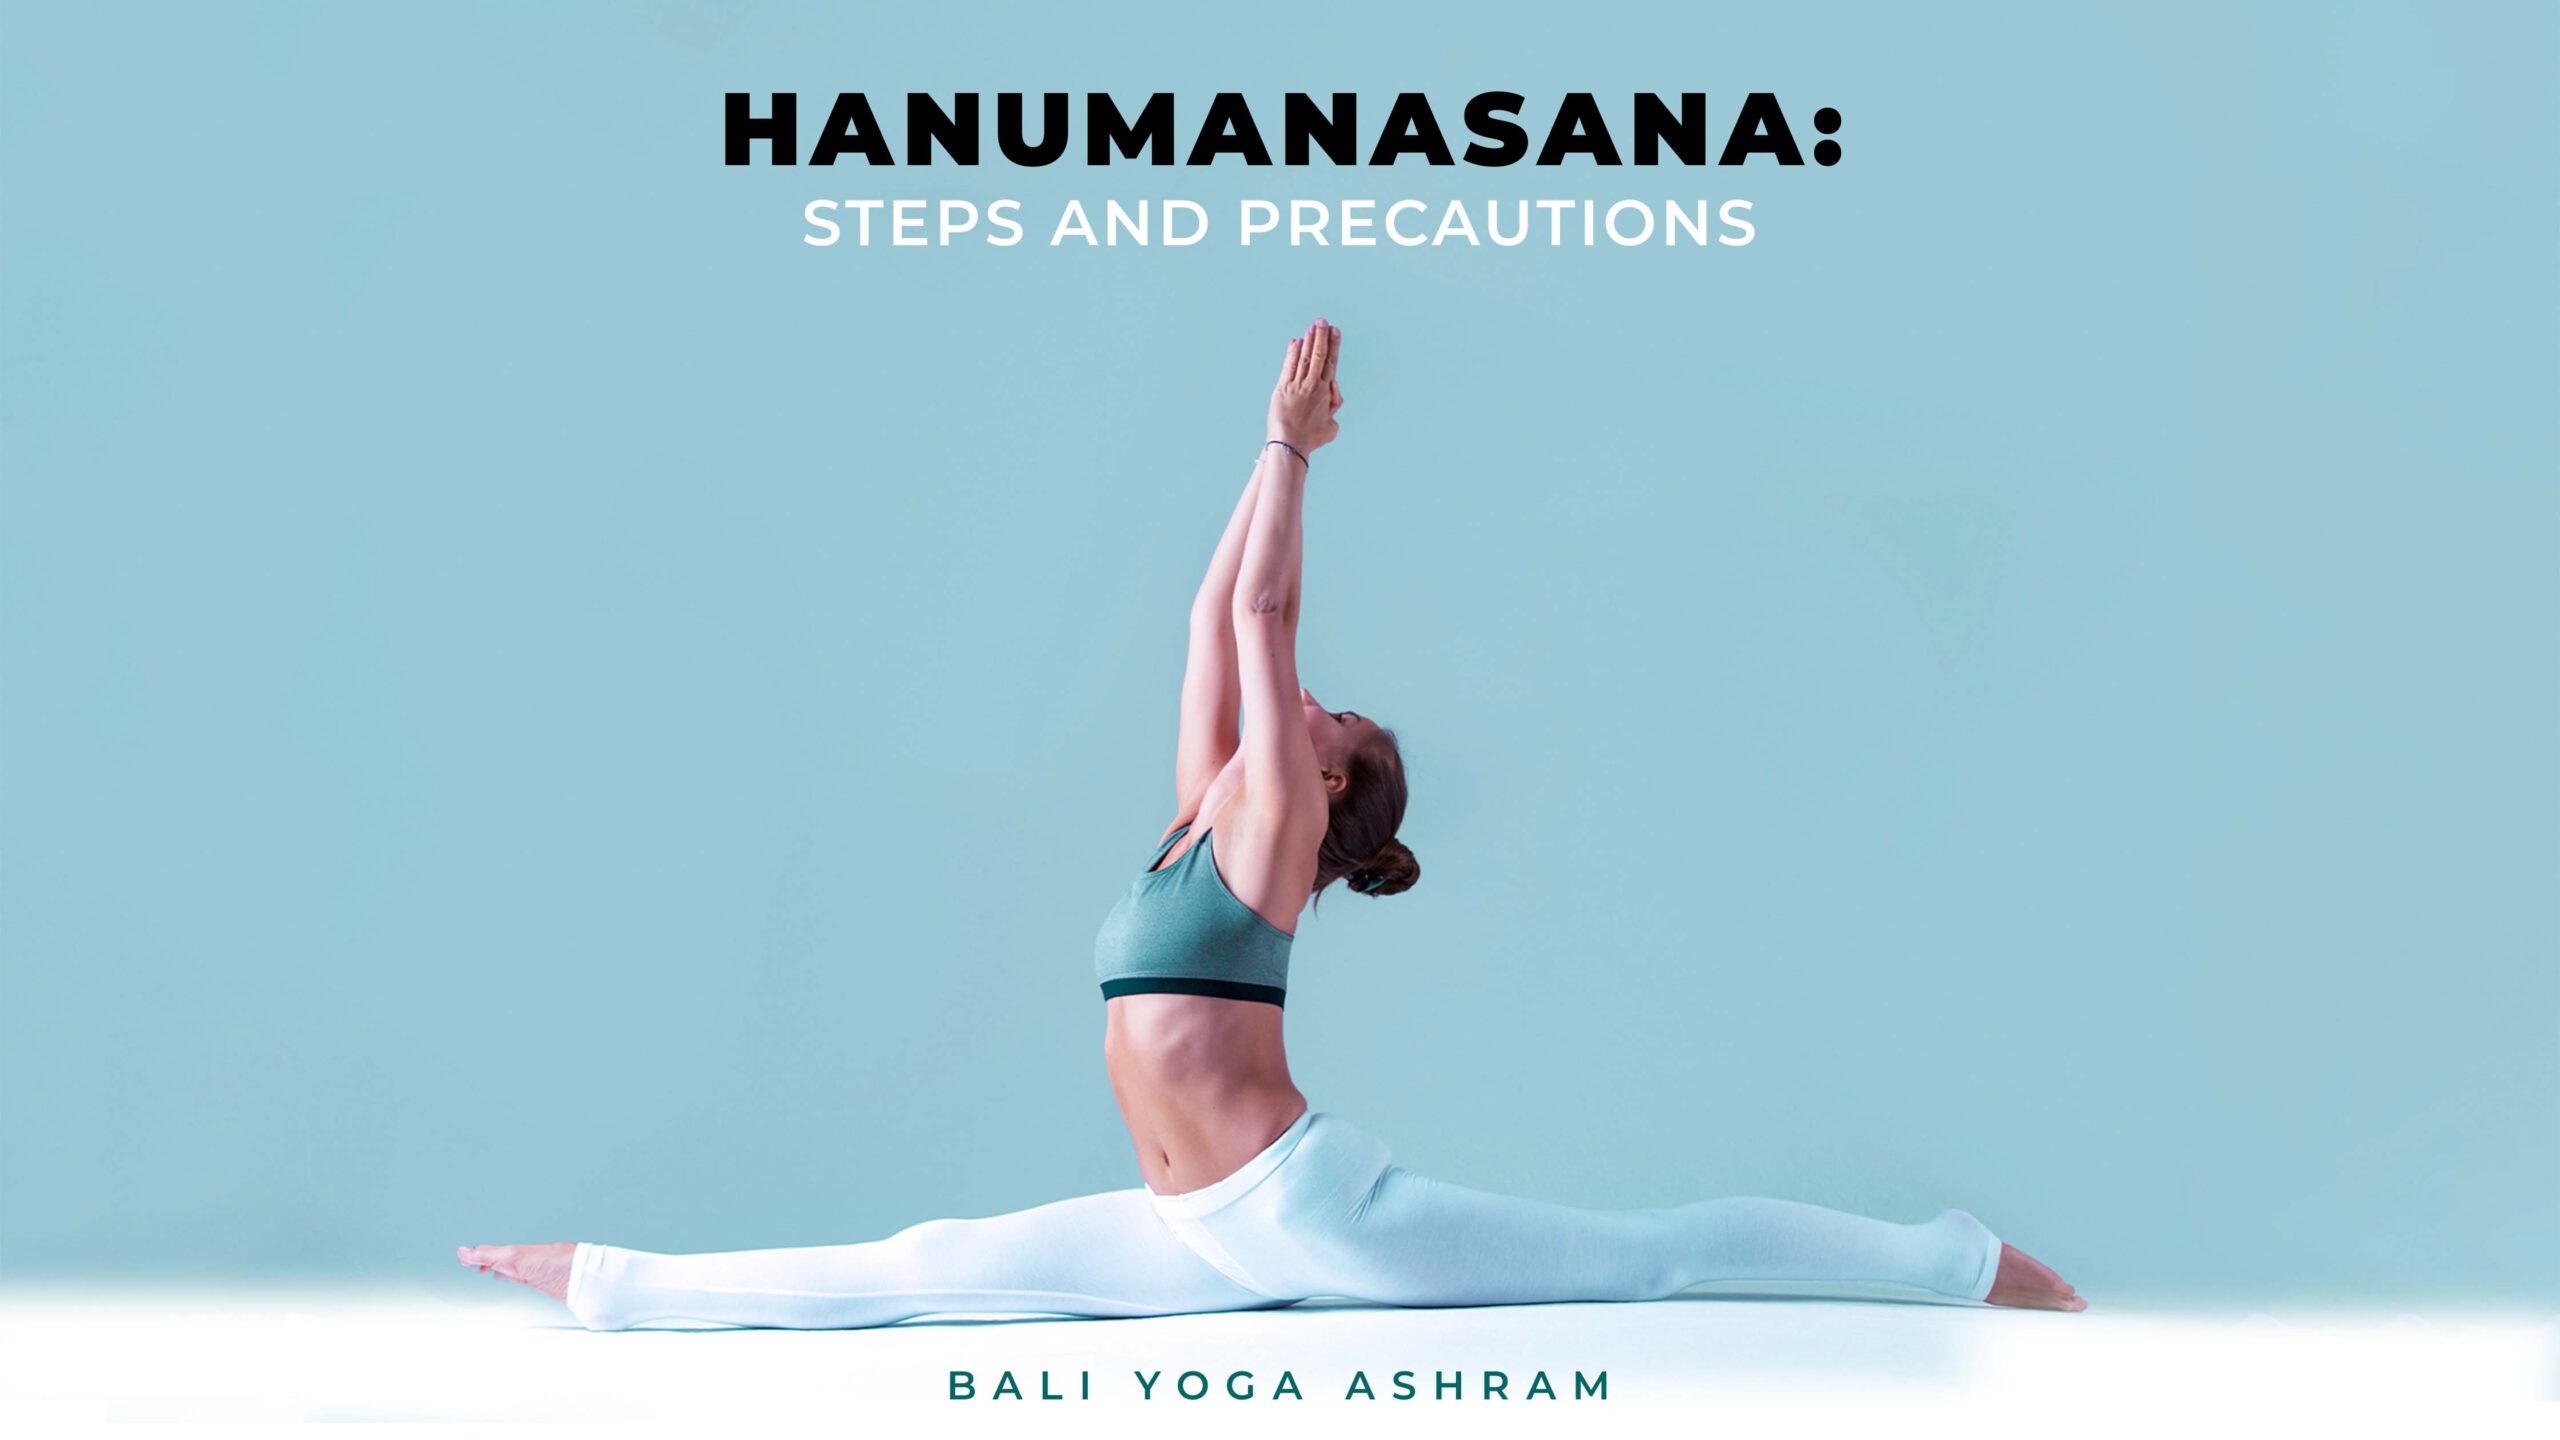 The Big Leap or Hanumanasana – ASPECTS OF YOGA